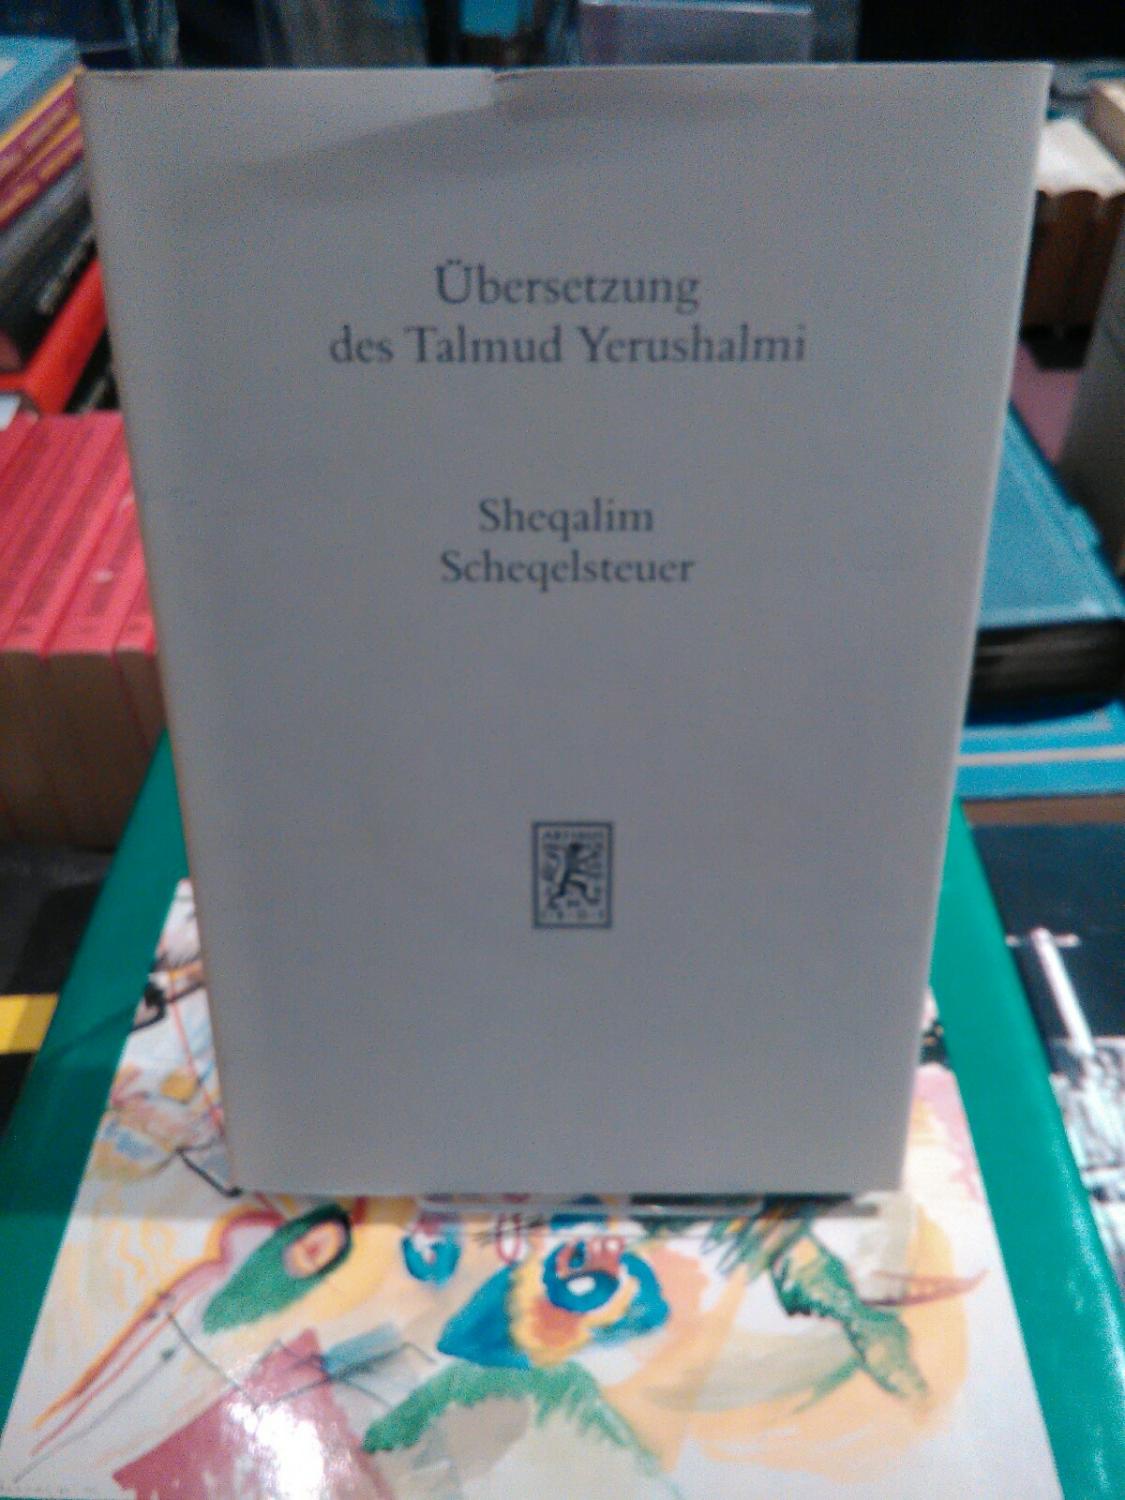 Übersetzung des Talmud Yerushalmi. Band II/5: Sheqalim - Sheqelsteuer. - Hüttenmeister, Frowald